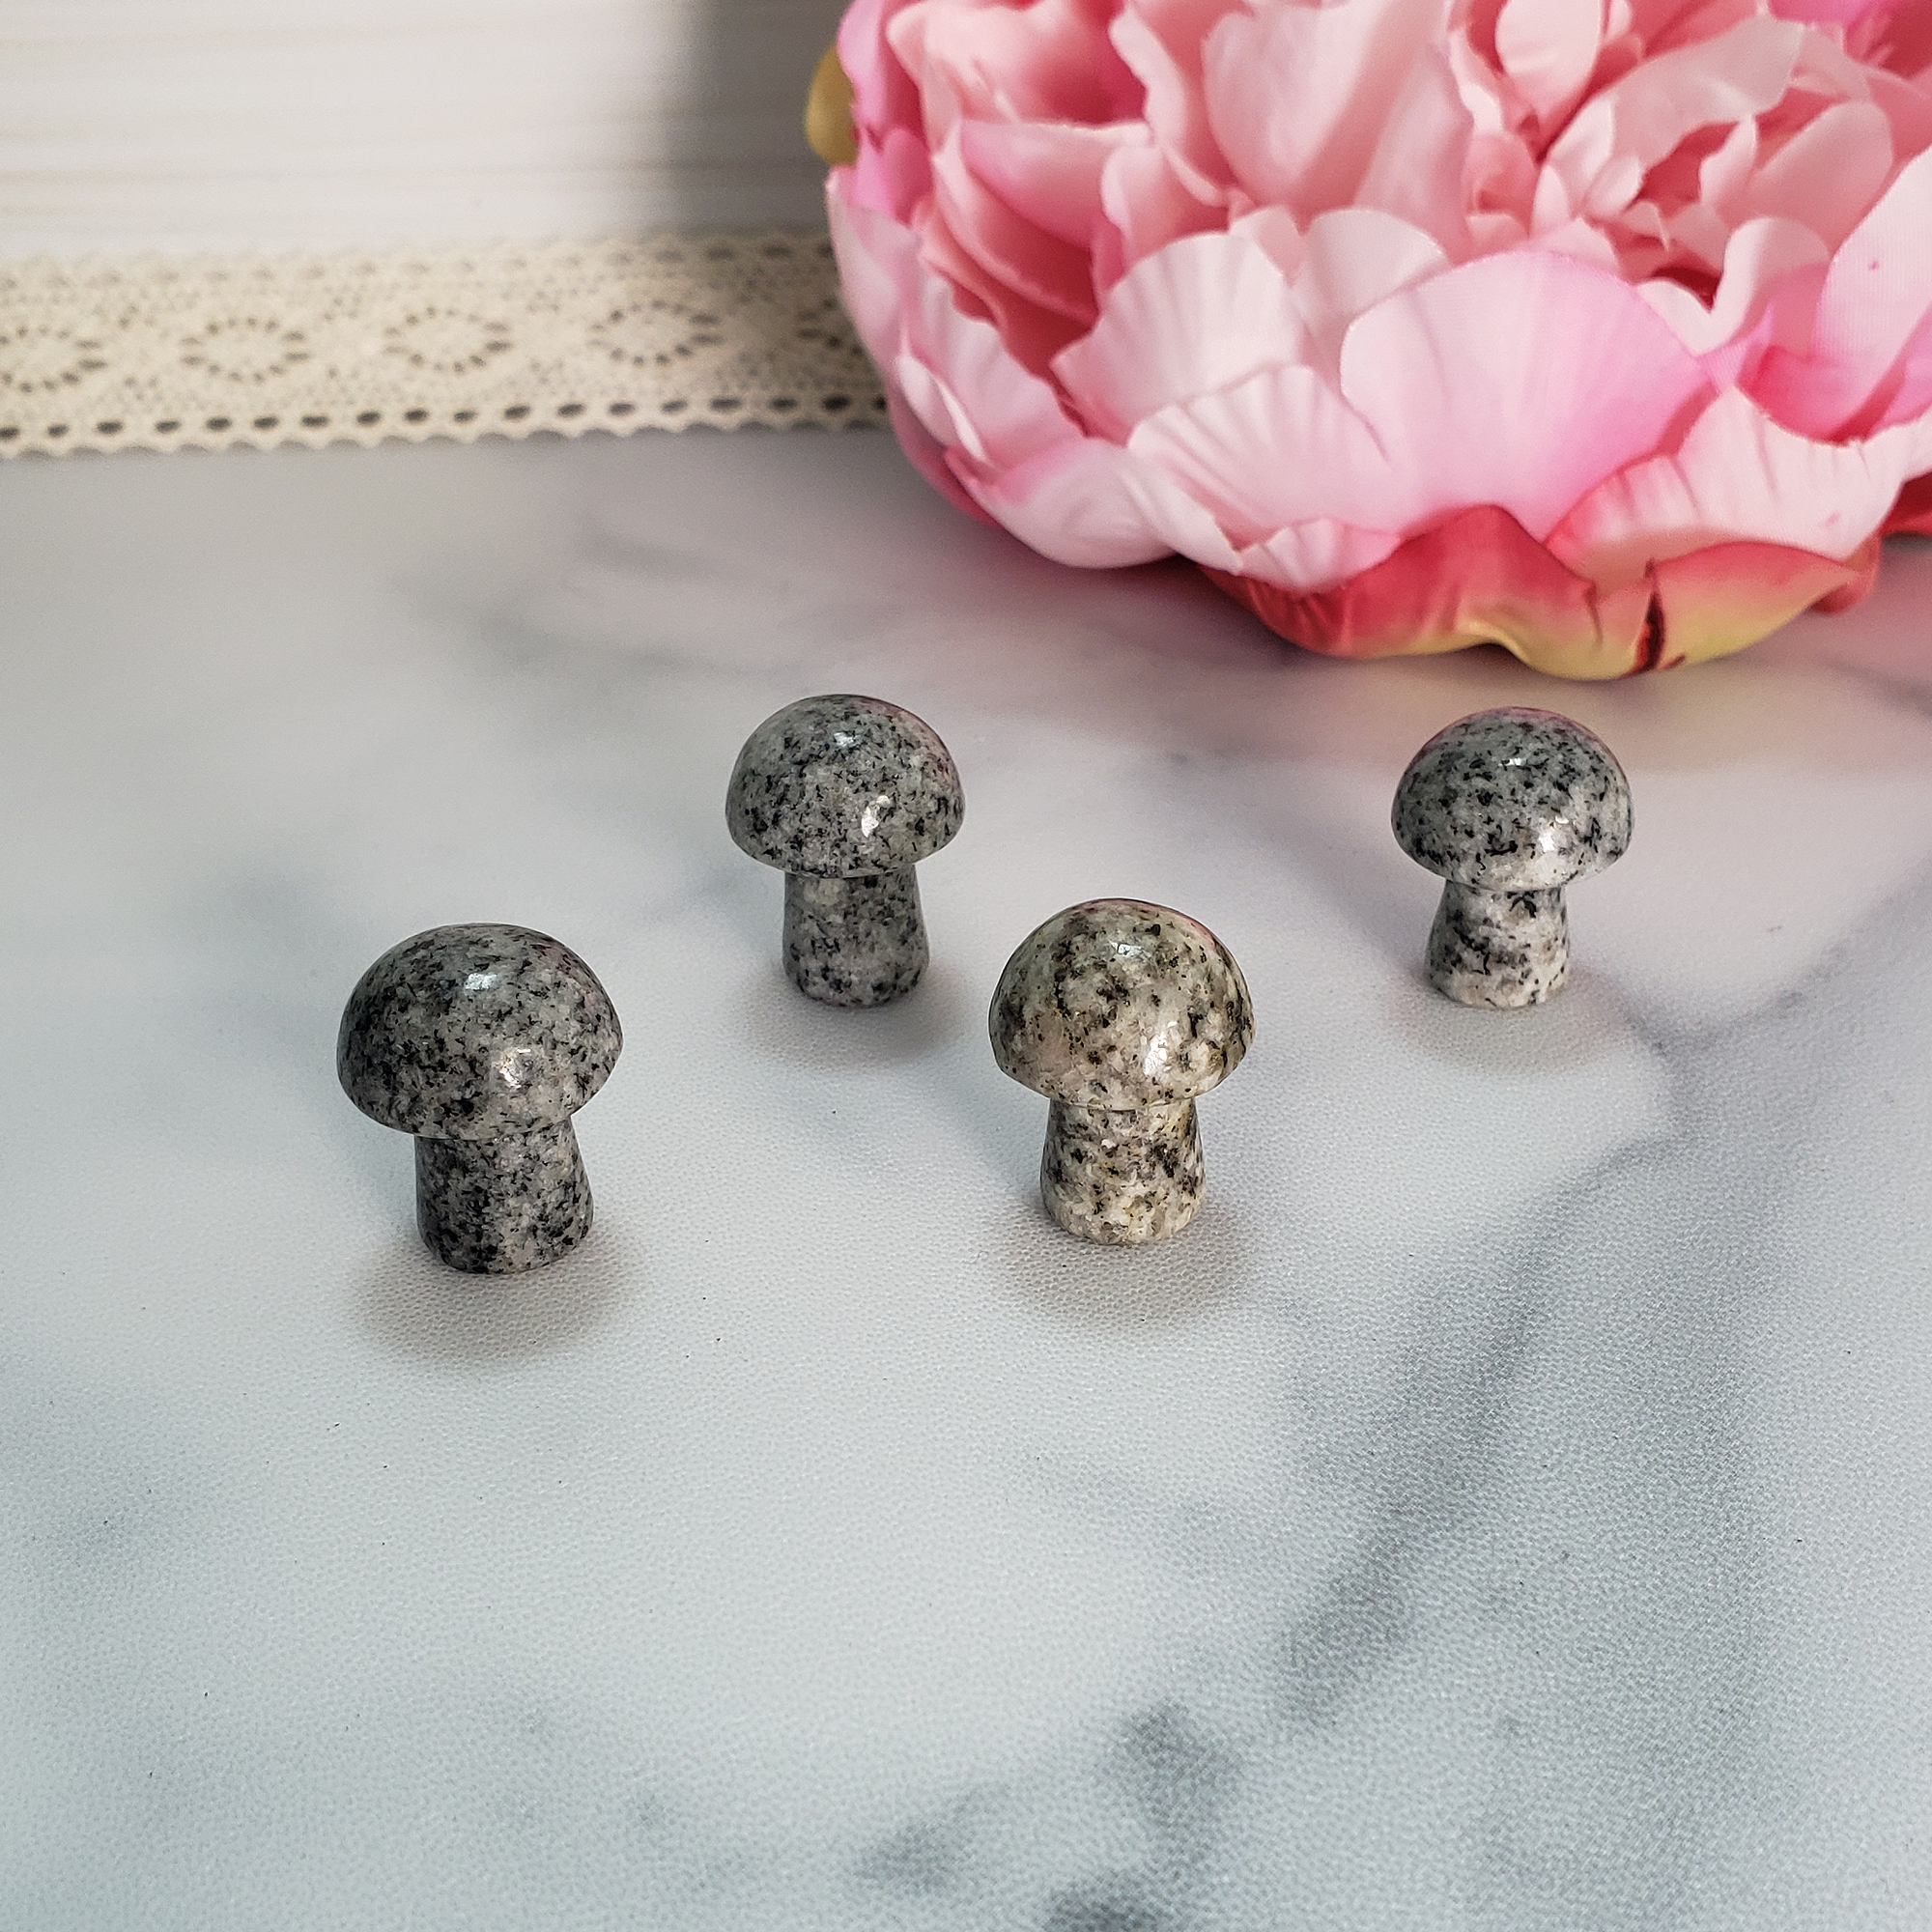 Granite Rock Natural Gemstone Mushroom Toadstool Mini Carving - Crystal Shrooms